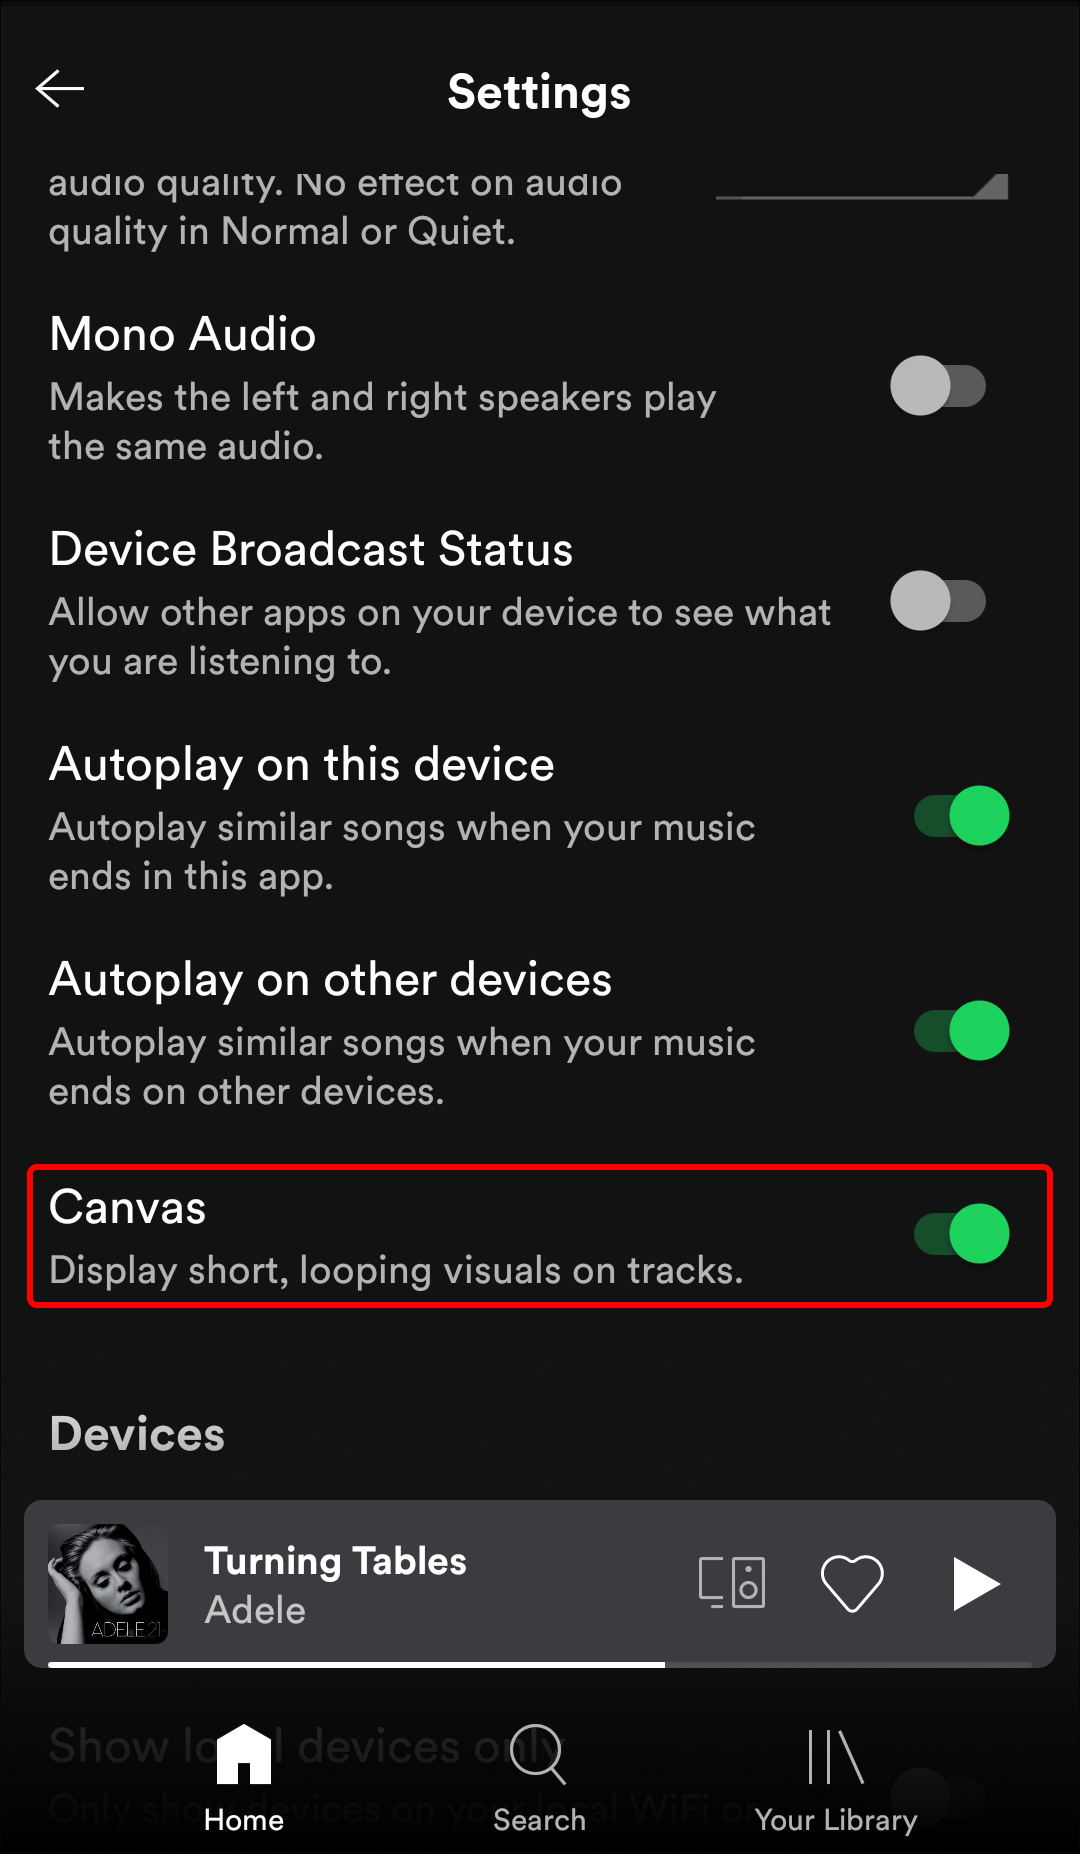 Bật/tắt Canvas trên Spotify: Canvas là một tính năng tuyệt vời trên Spotify giúp người dùng có thể thưởng thức những hình ảnh động đẹp mắt trong quá trình nghe nhạc. Nếu bạn chưa sử dụng Canvas trên Spotify thì bạn đang bỏ lỡ một trải nghiệm nghe nhạc thú vị. Hãy bật tính năng này ngay bây giờ để tận hưởng màn hình chuyển đổi hình ảnh động đẹp mắt liên quan đến bài hát yêu thích của bạn.